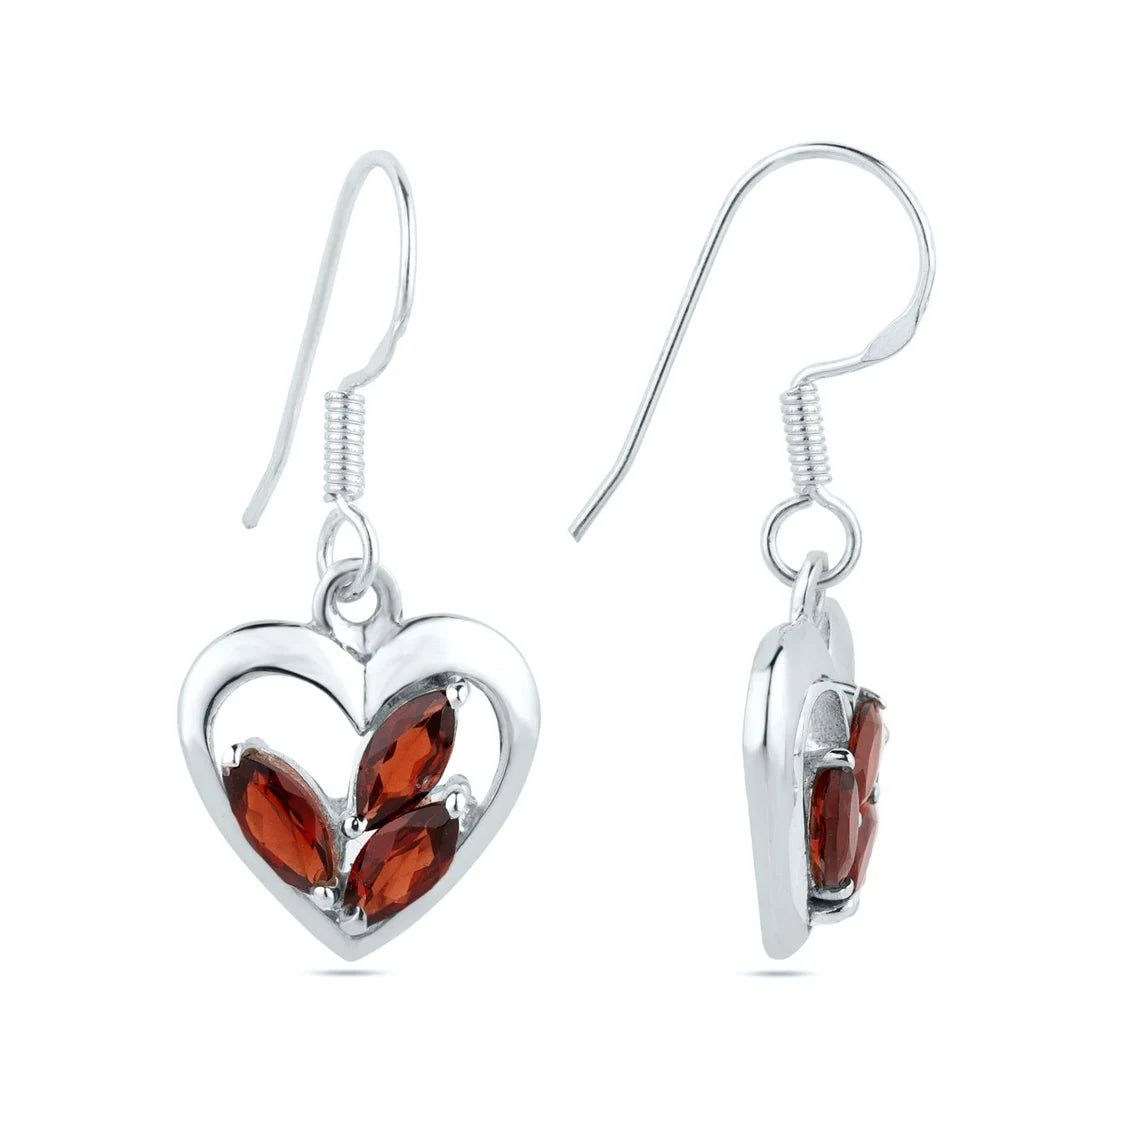 Garnet flower dangle earrings, red garnet heart drop earrings, January birthstone earrings, gift for mom, gift for her